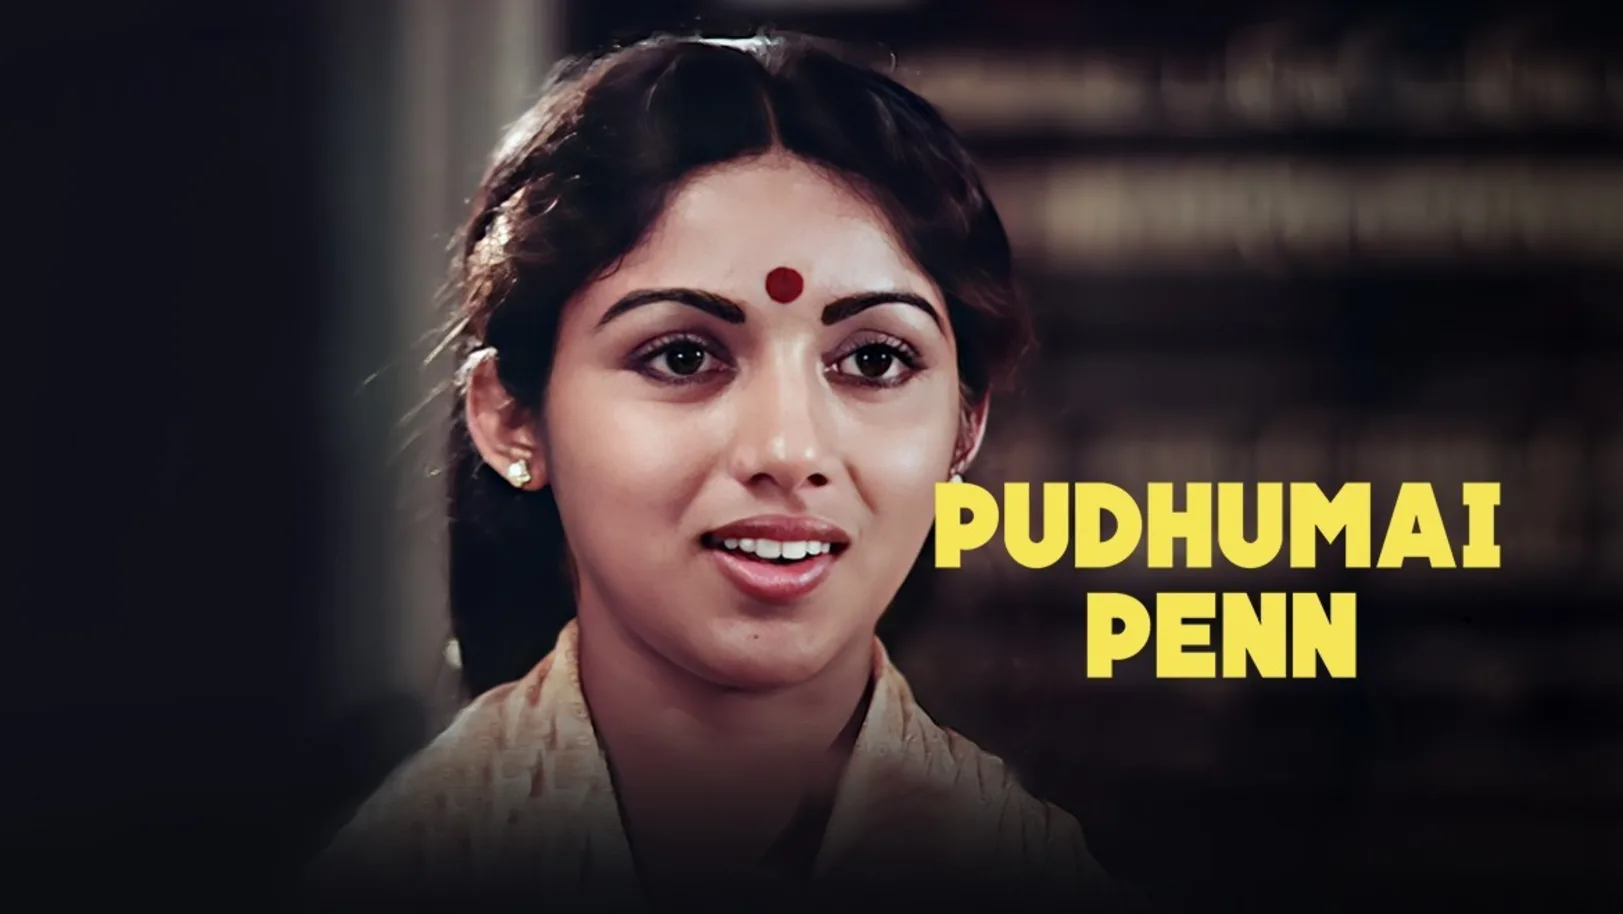 Pudhumai Penn Movie